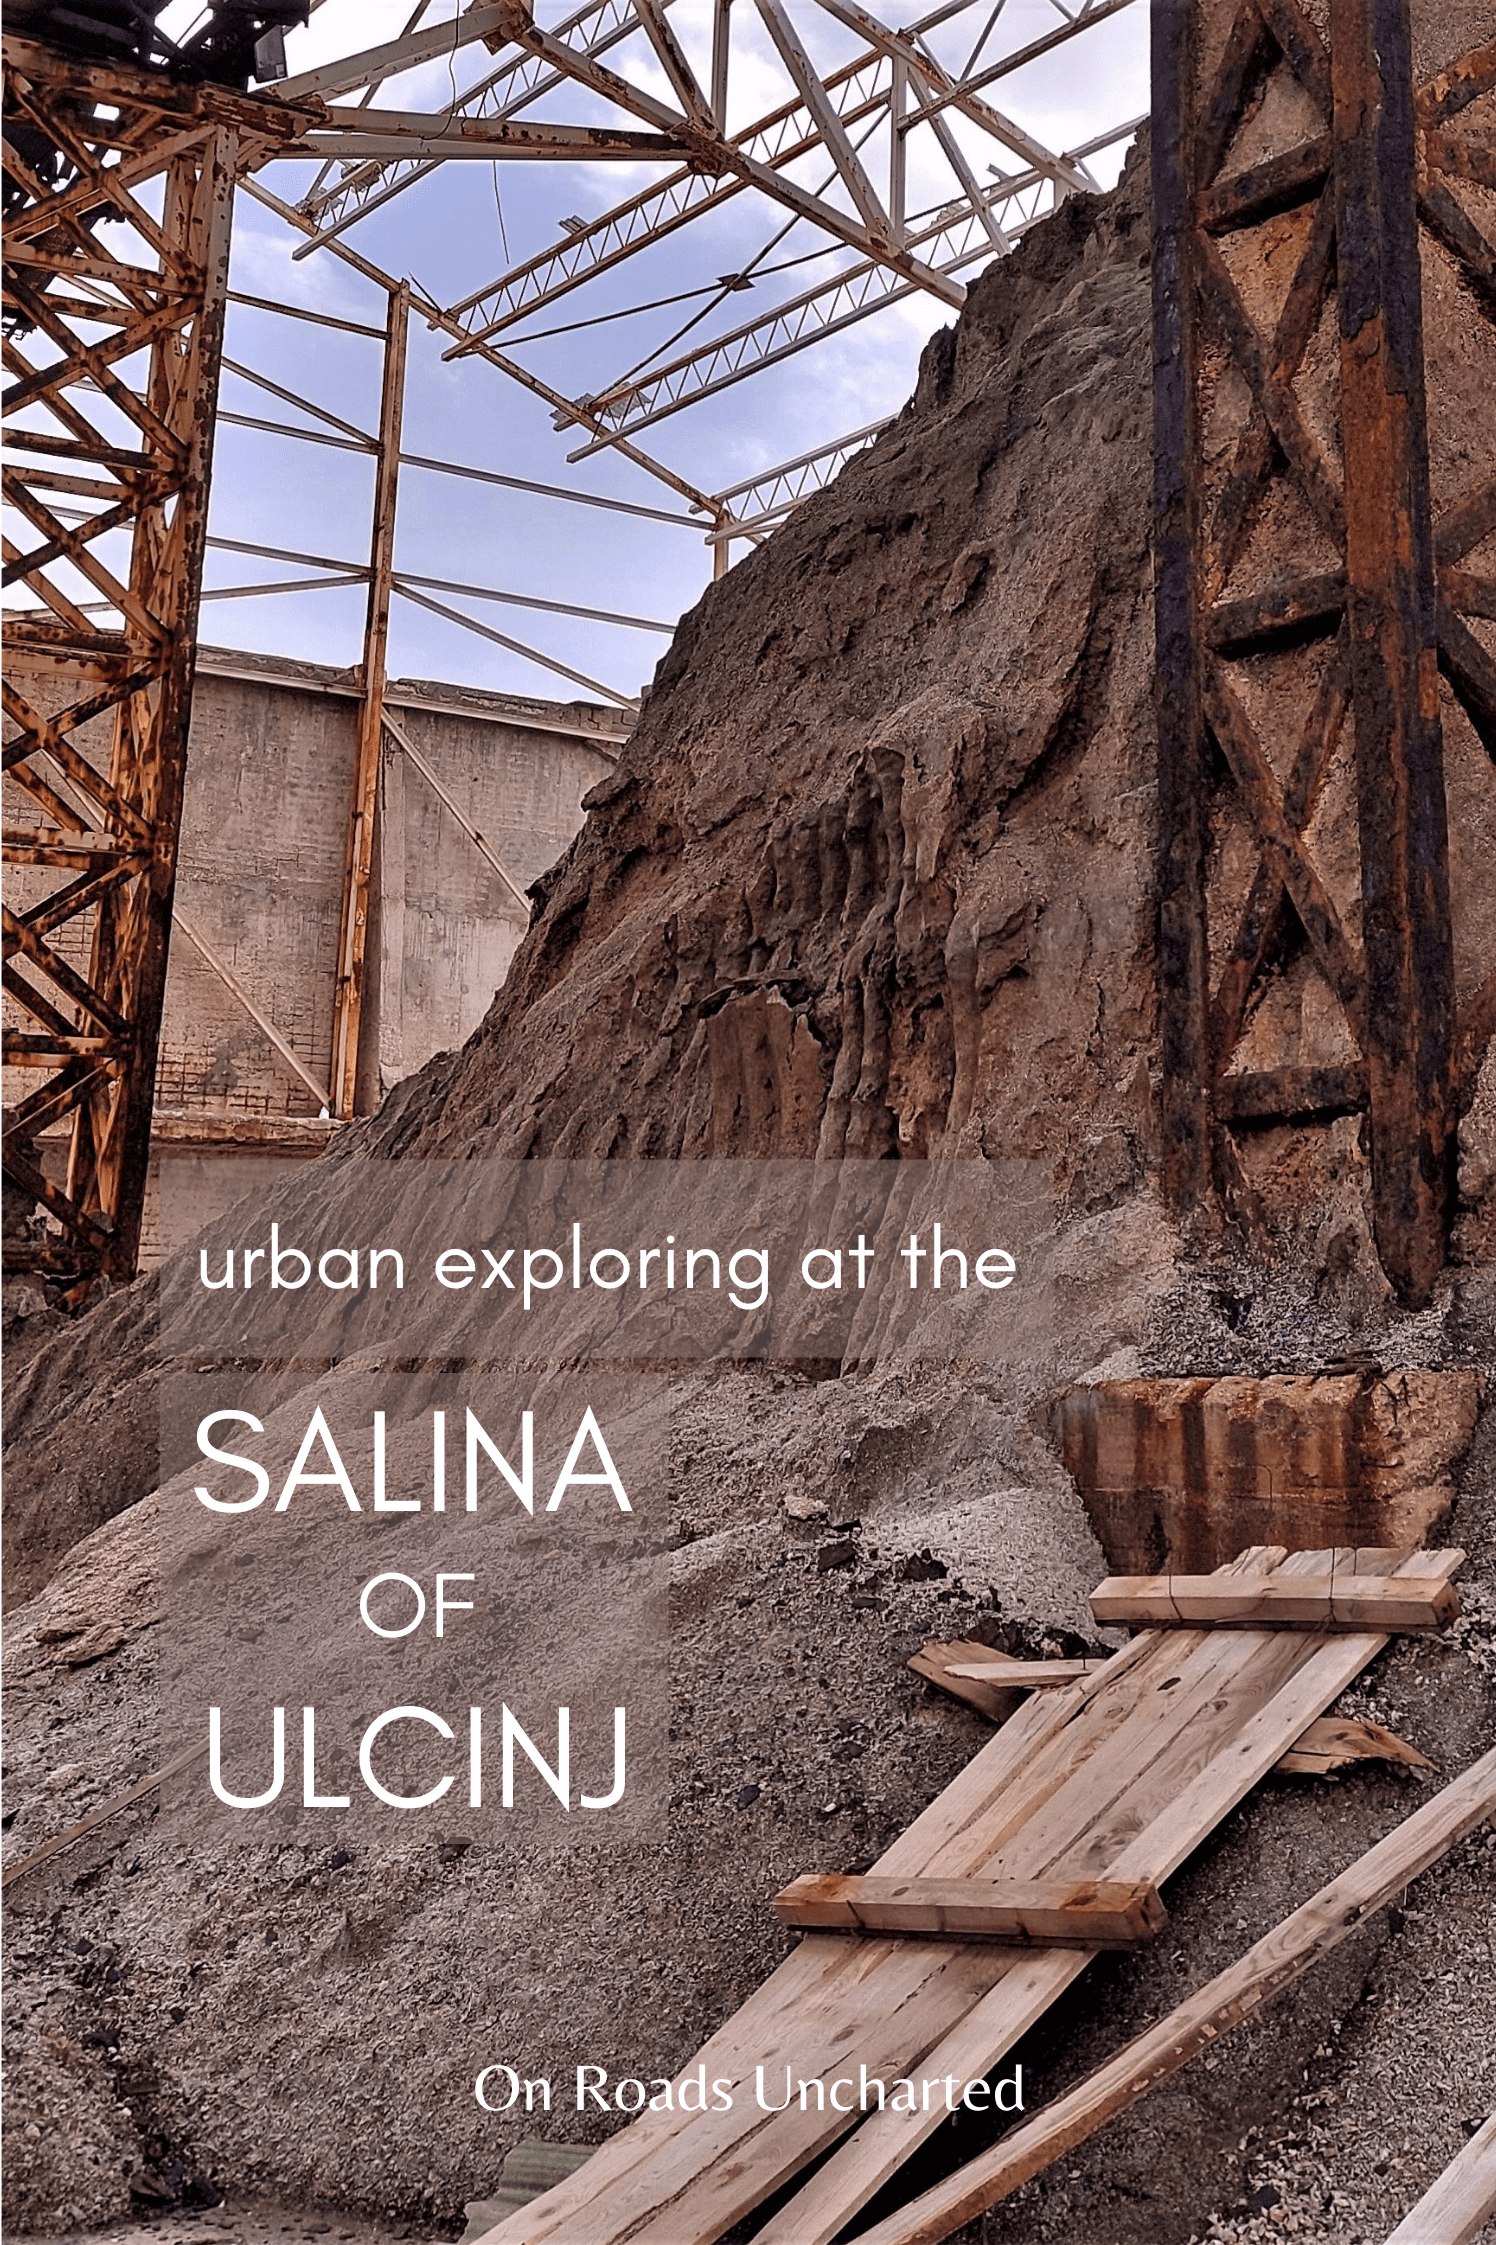 Urban exploring salina of Ulcinj pin